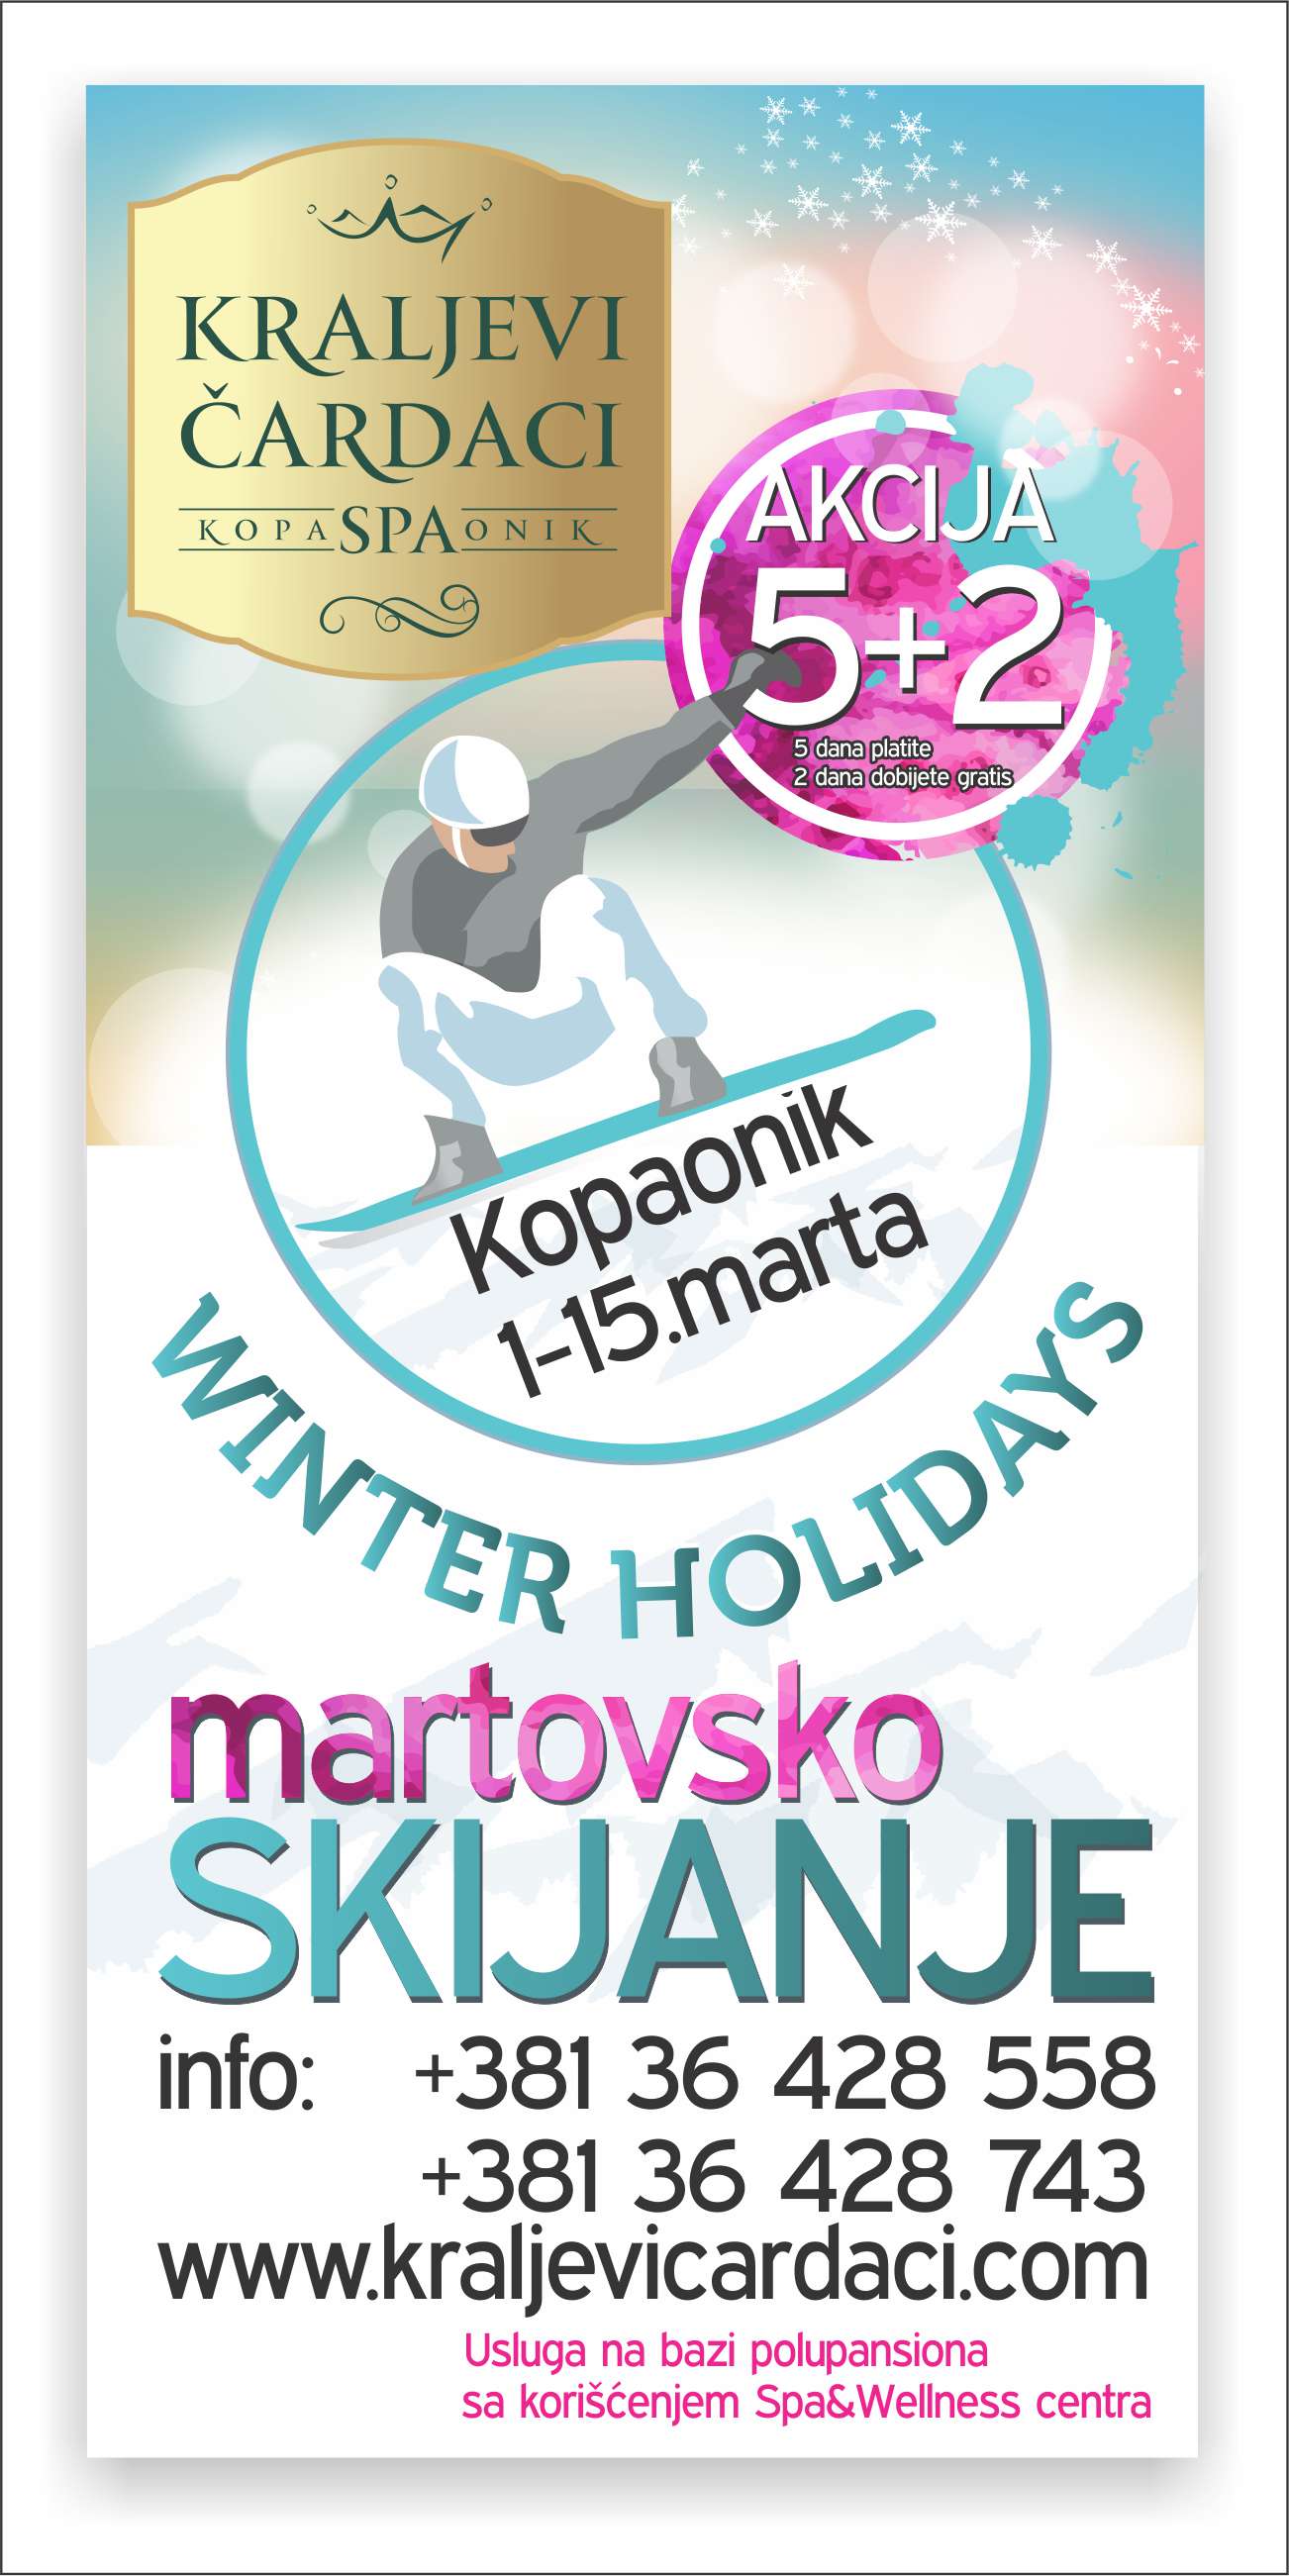 martovsko_skijanje.jpg